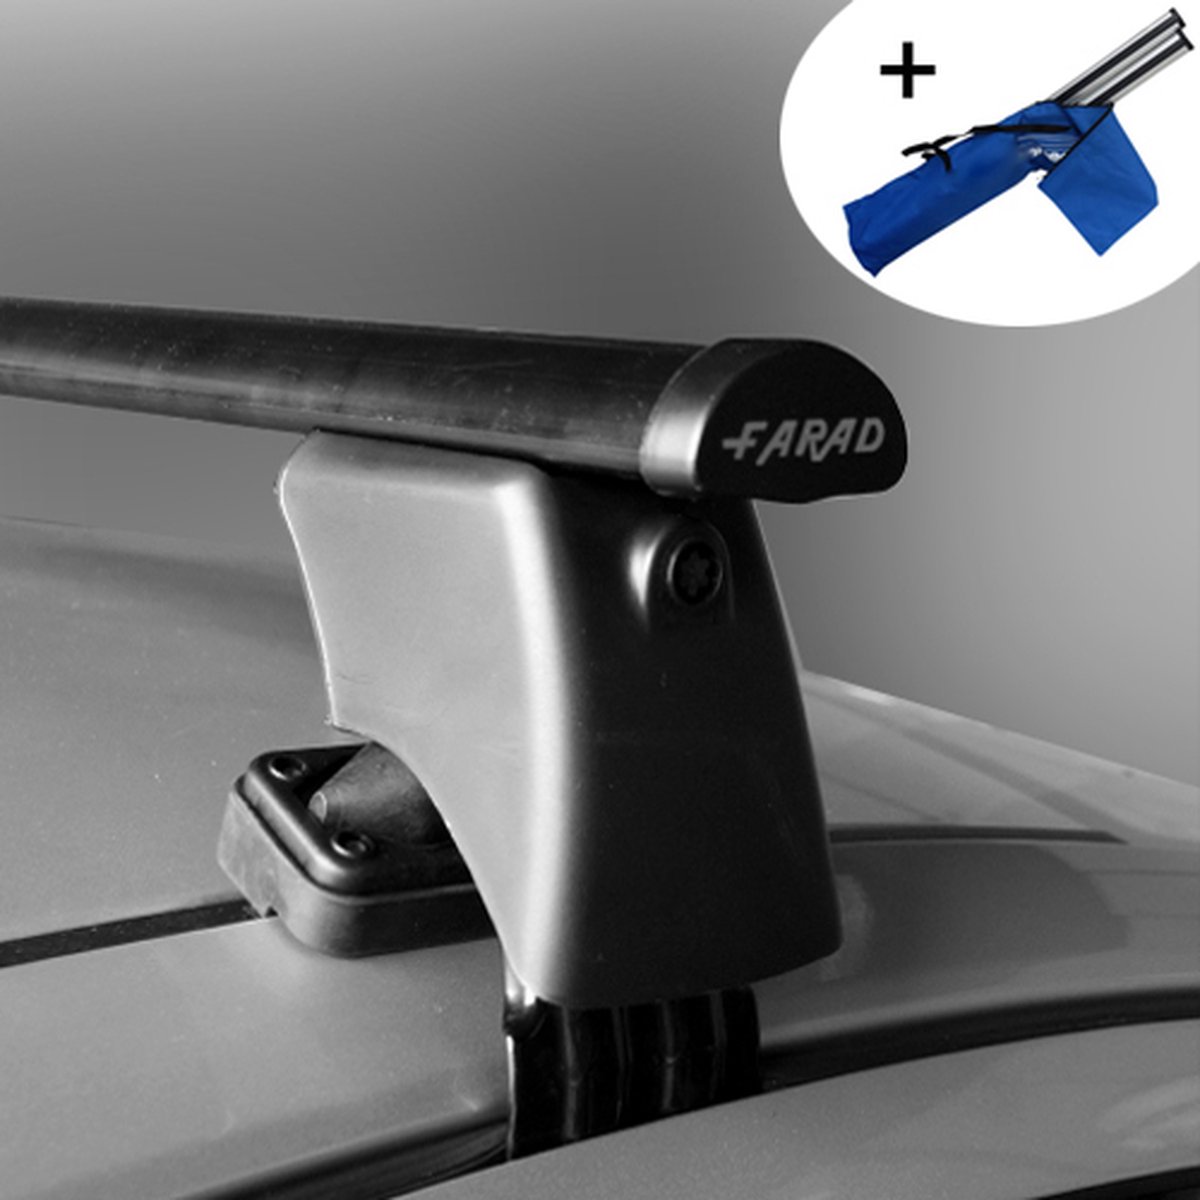 Dakdragers geschikt voor Seat Leon SC 3 deurs hatchback vanaf 2013 - Staal - inclusief dakdrager opbergtas